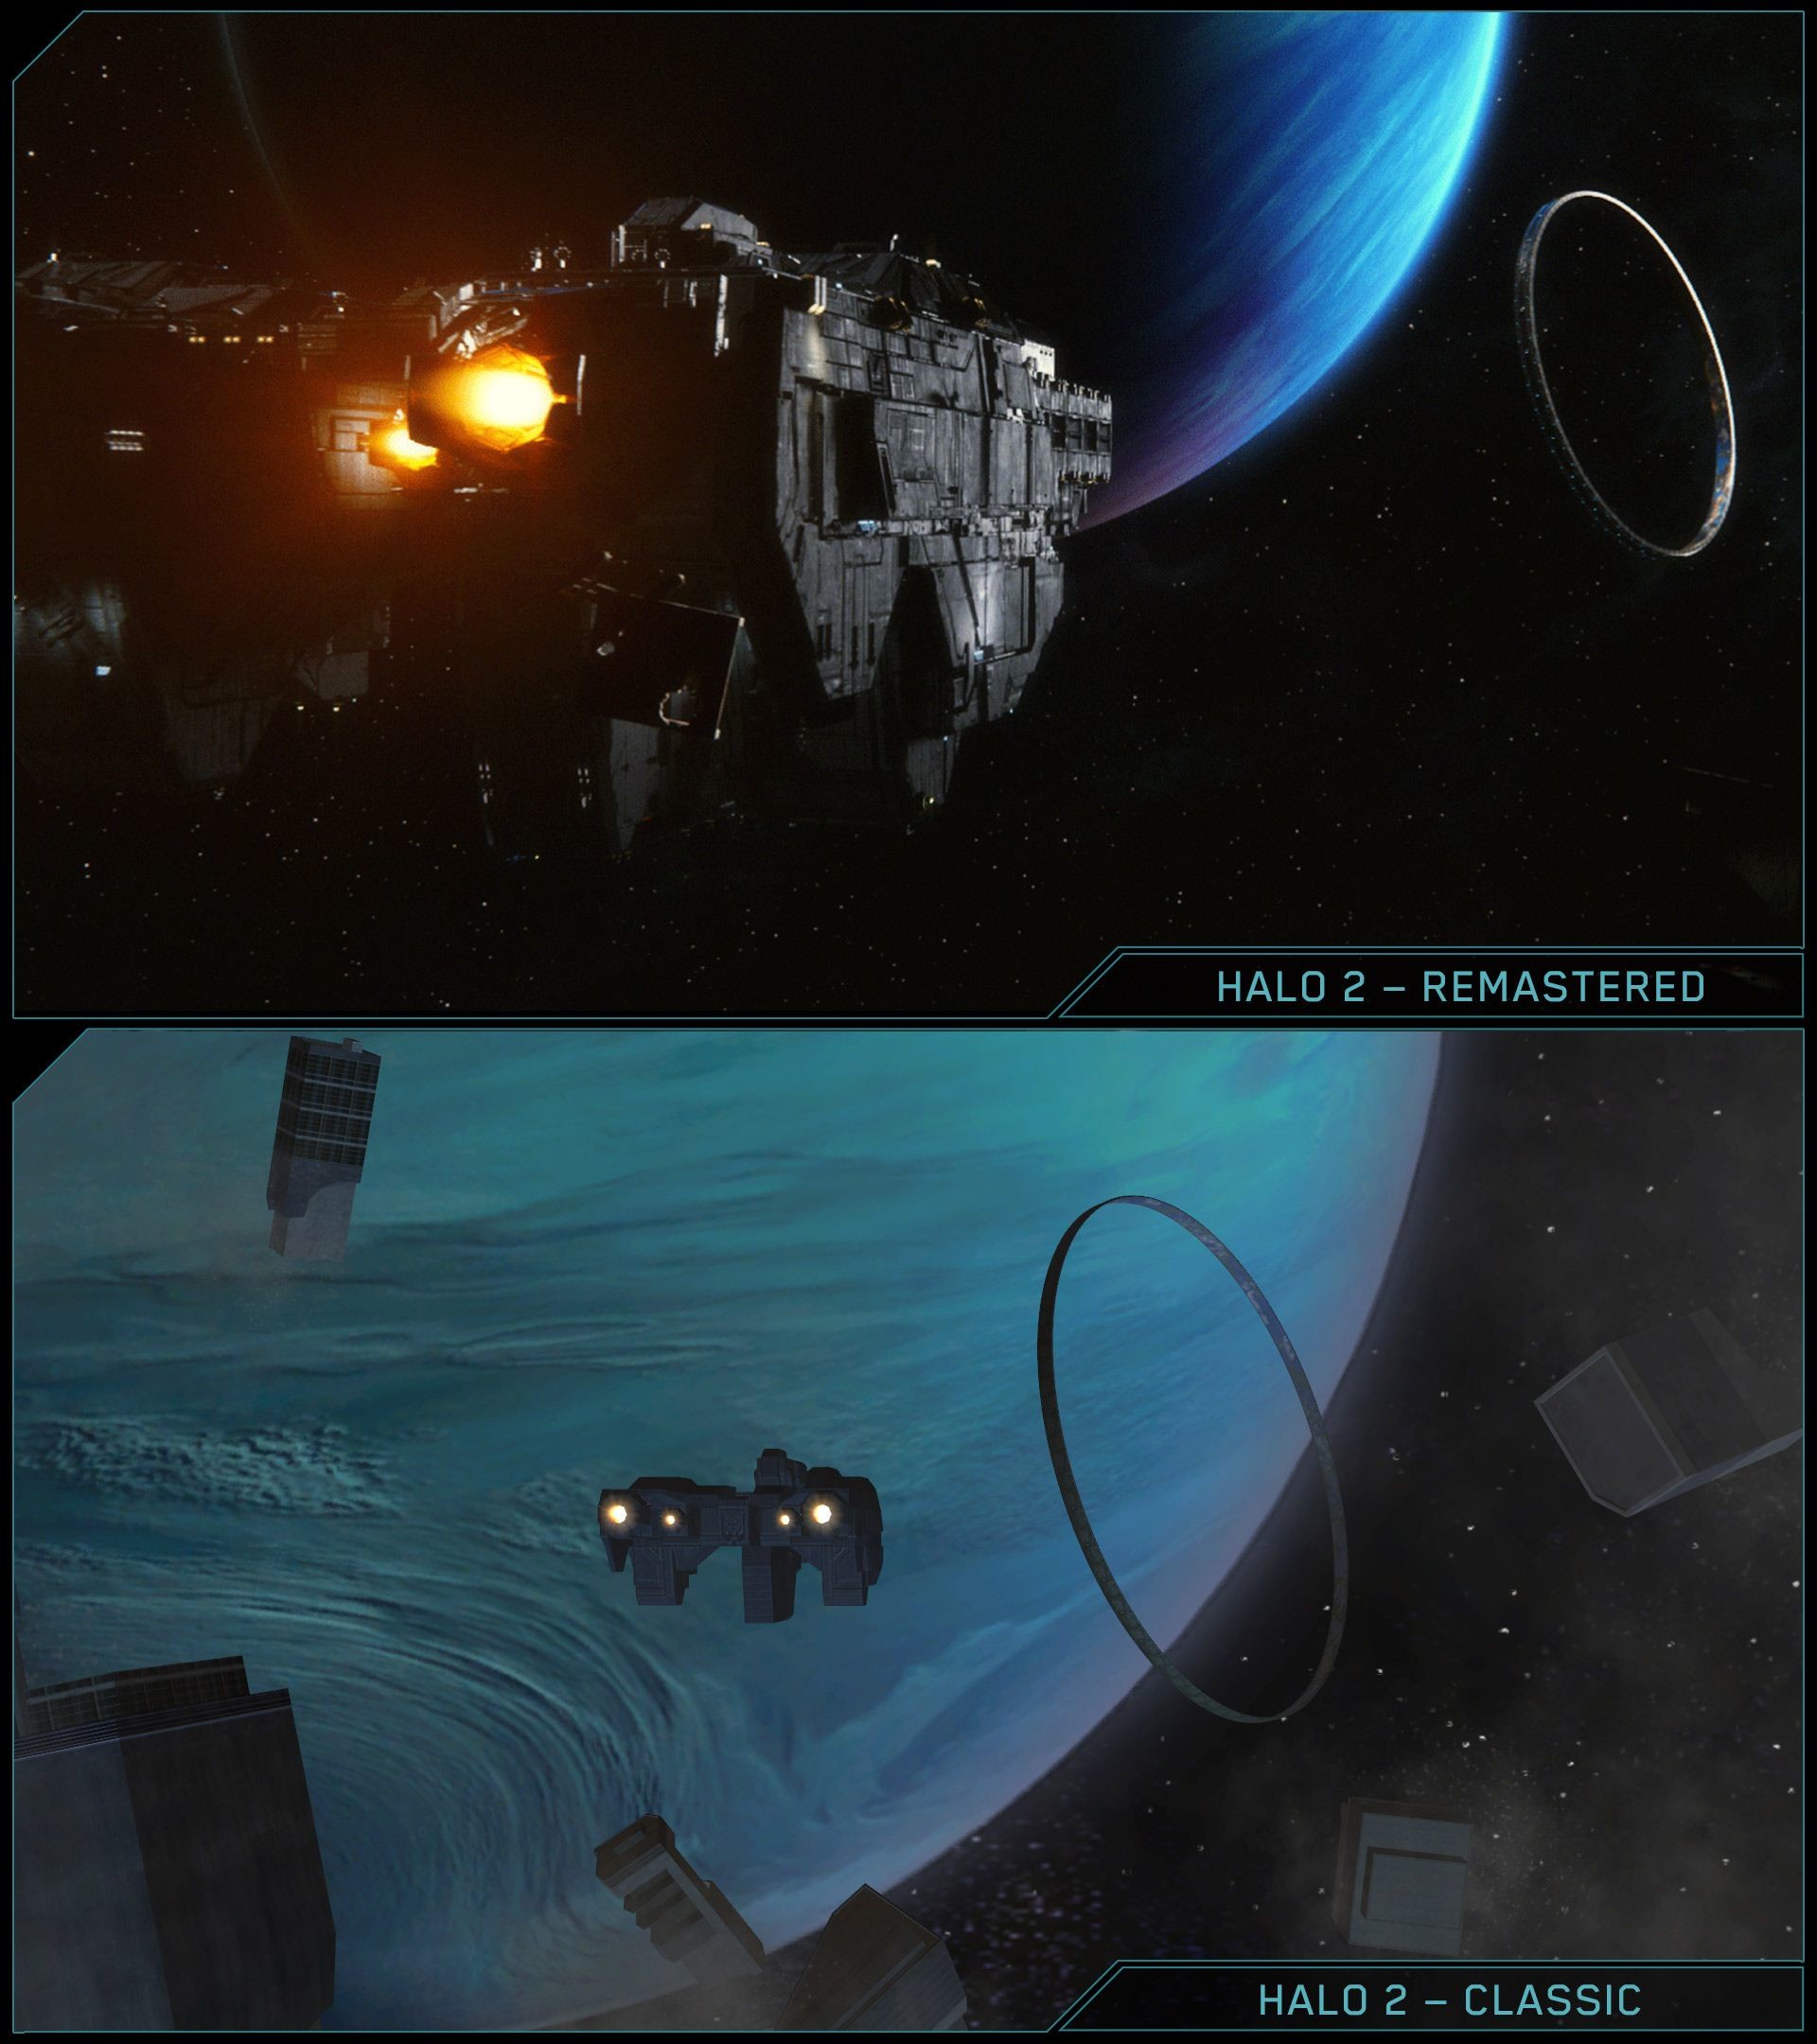 https://gamingbolt.com/wp-content/uploads/2014/06/E3-2014-Halo -2-Anniversary-Comparison-Delta-Halo-jpg-1.jpg